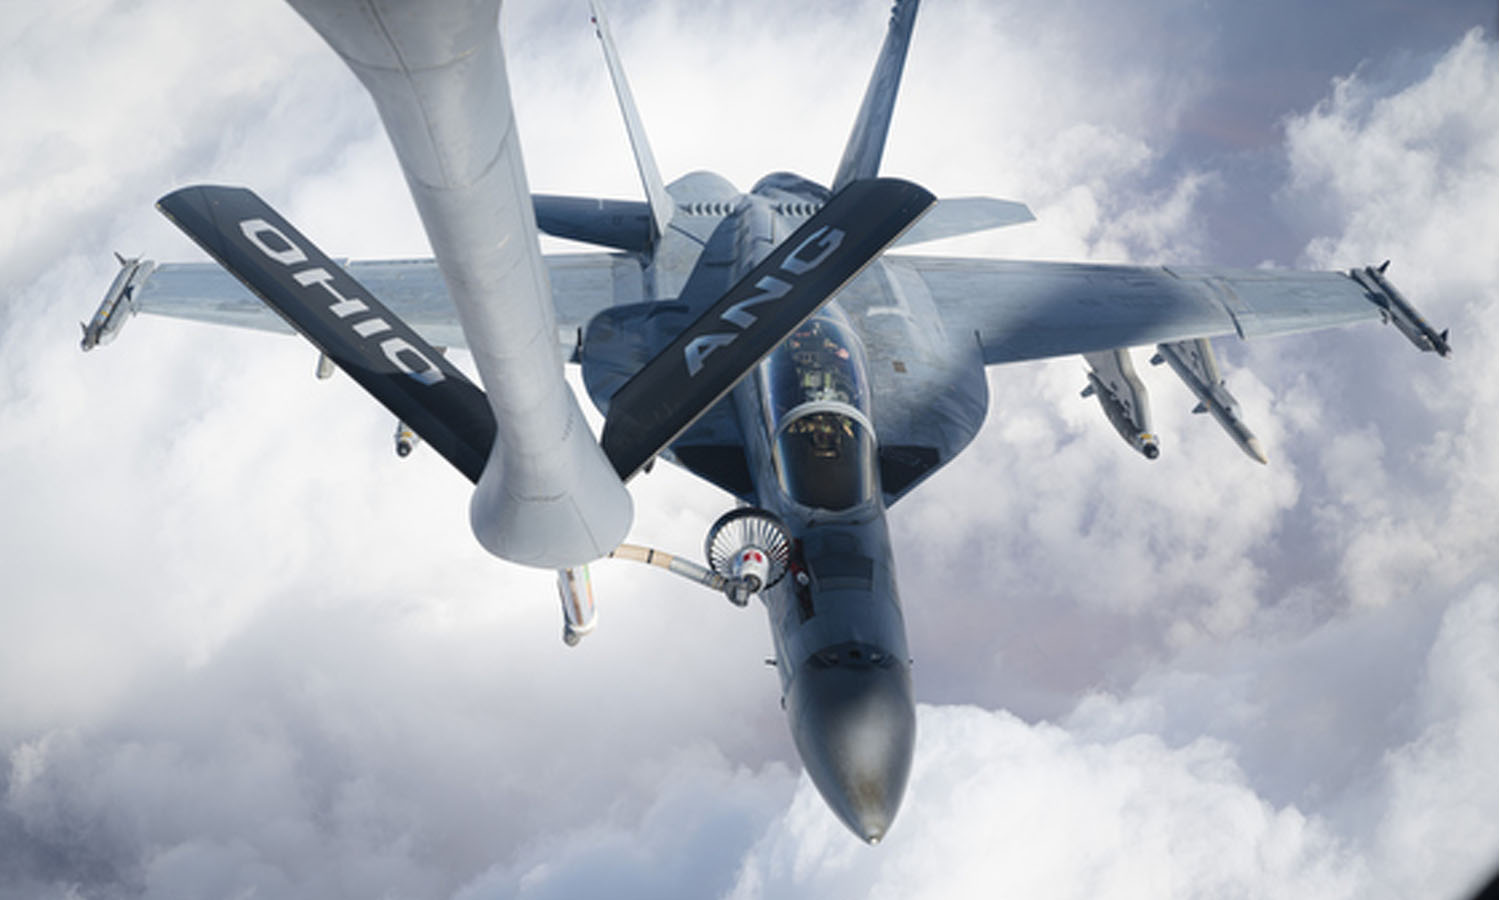 مقاتلة أمريكية تستعد للتزود بالوقود جوًا في منطقة نشاط القيادة المركزية الأمريكية- 22 من كانون الأول 2023 (سينتكوم)